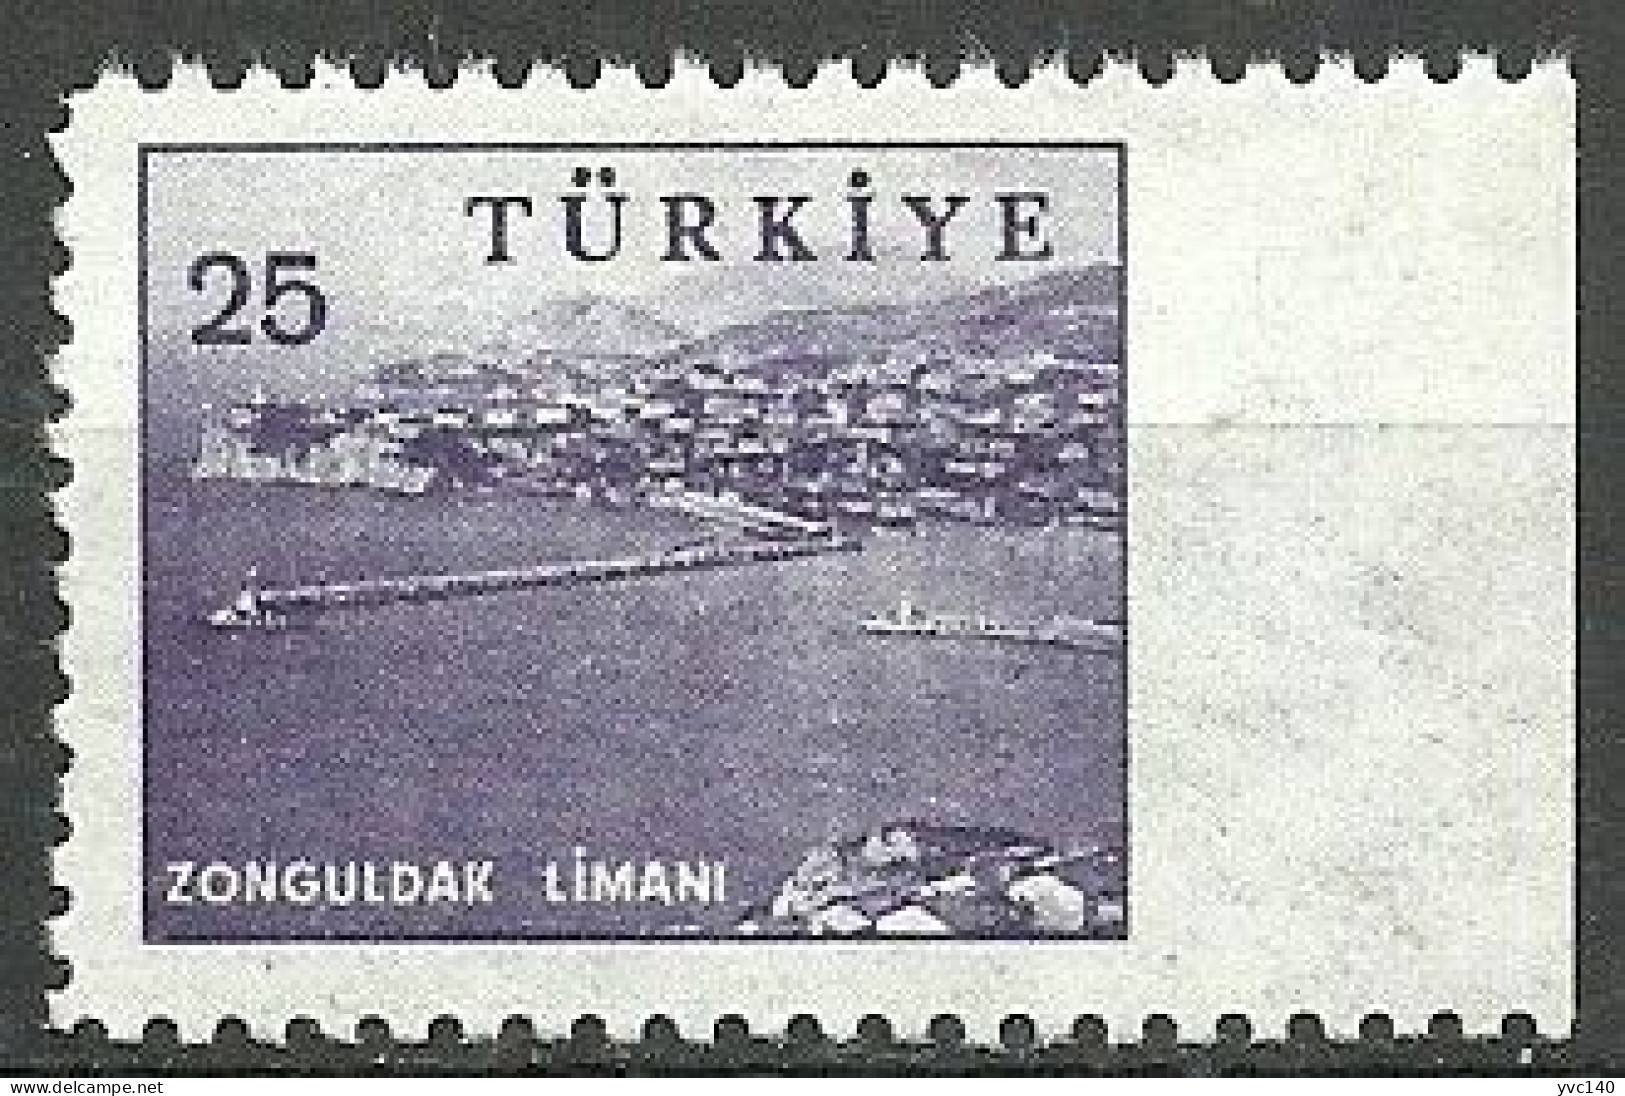 Turkey; 1959 Pictorial Postage Stamp 25 K. ERROR "Imperf. Edge" - Neufs